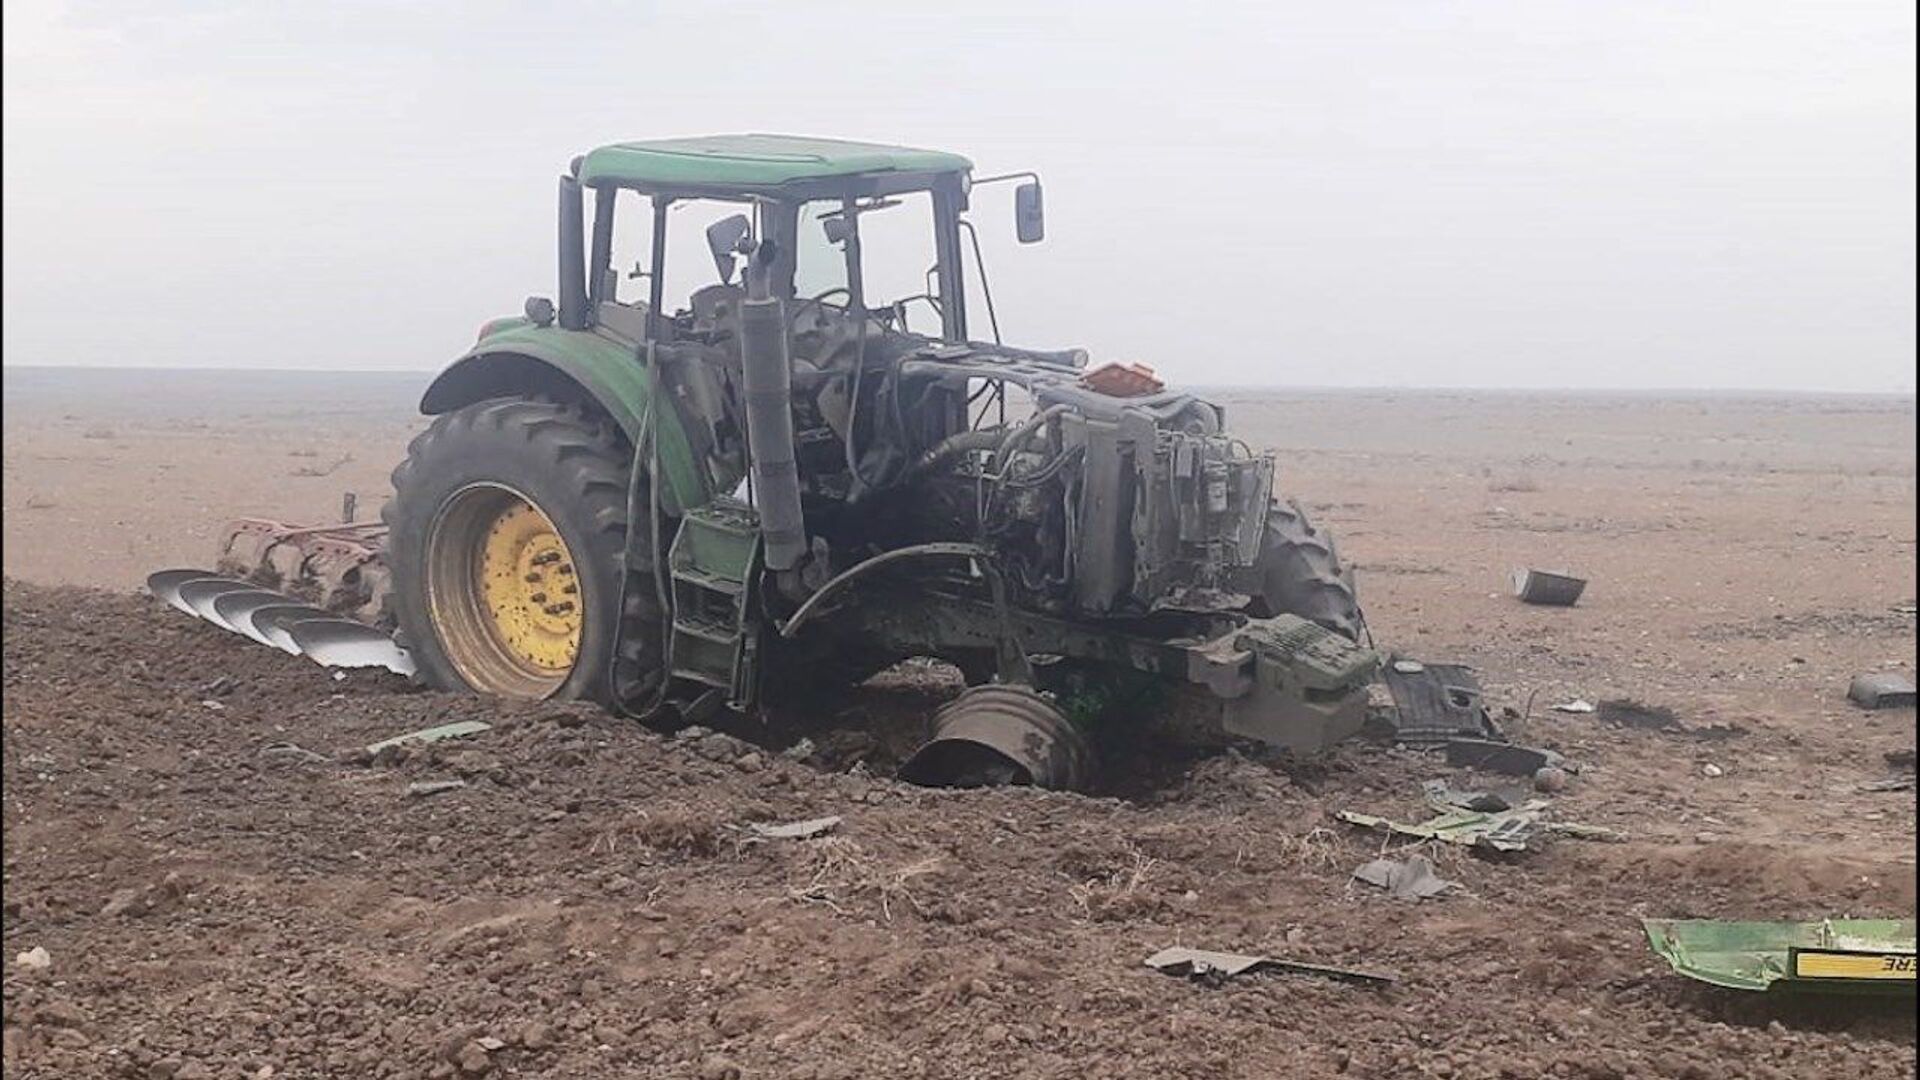 Horadizdə traktor minaya düşdü - Sürücü yaralandı